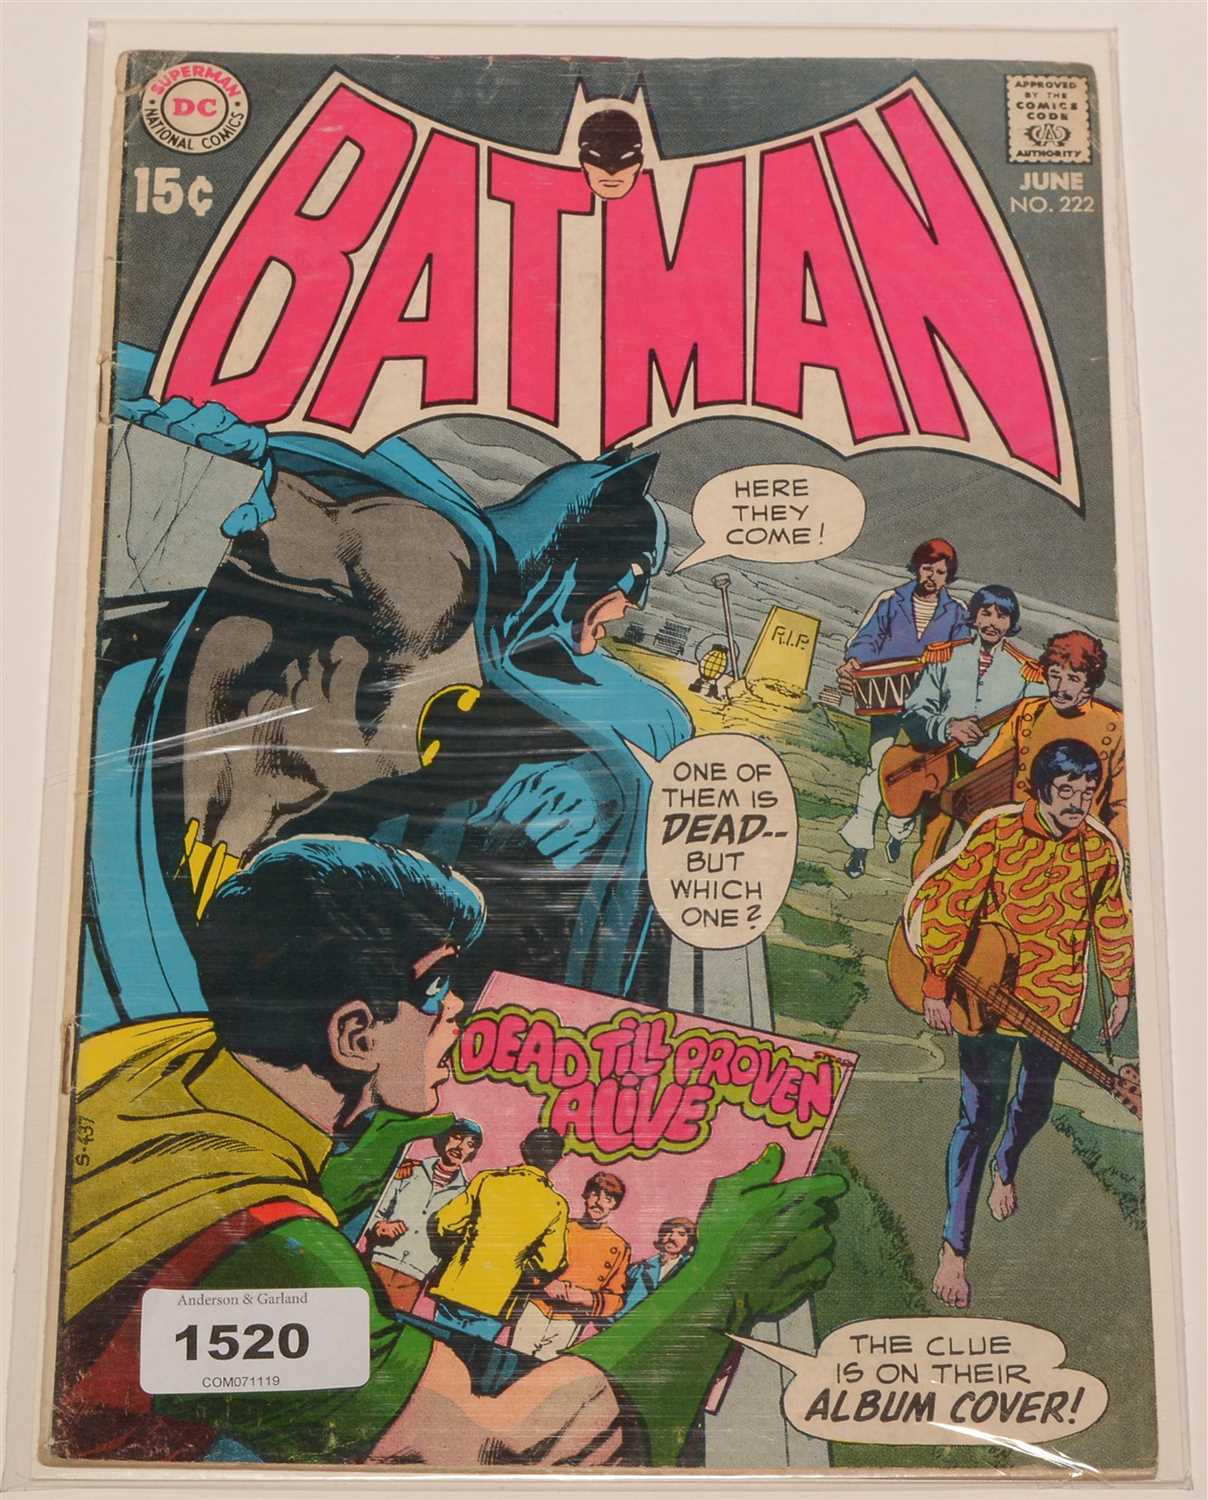 Lot 1520 - Batman No. 222